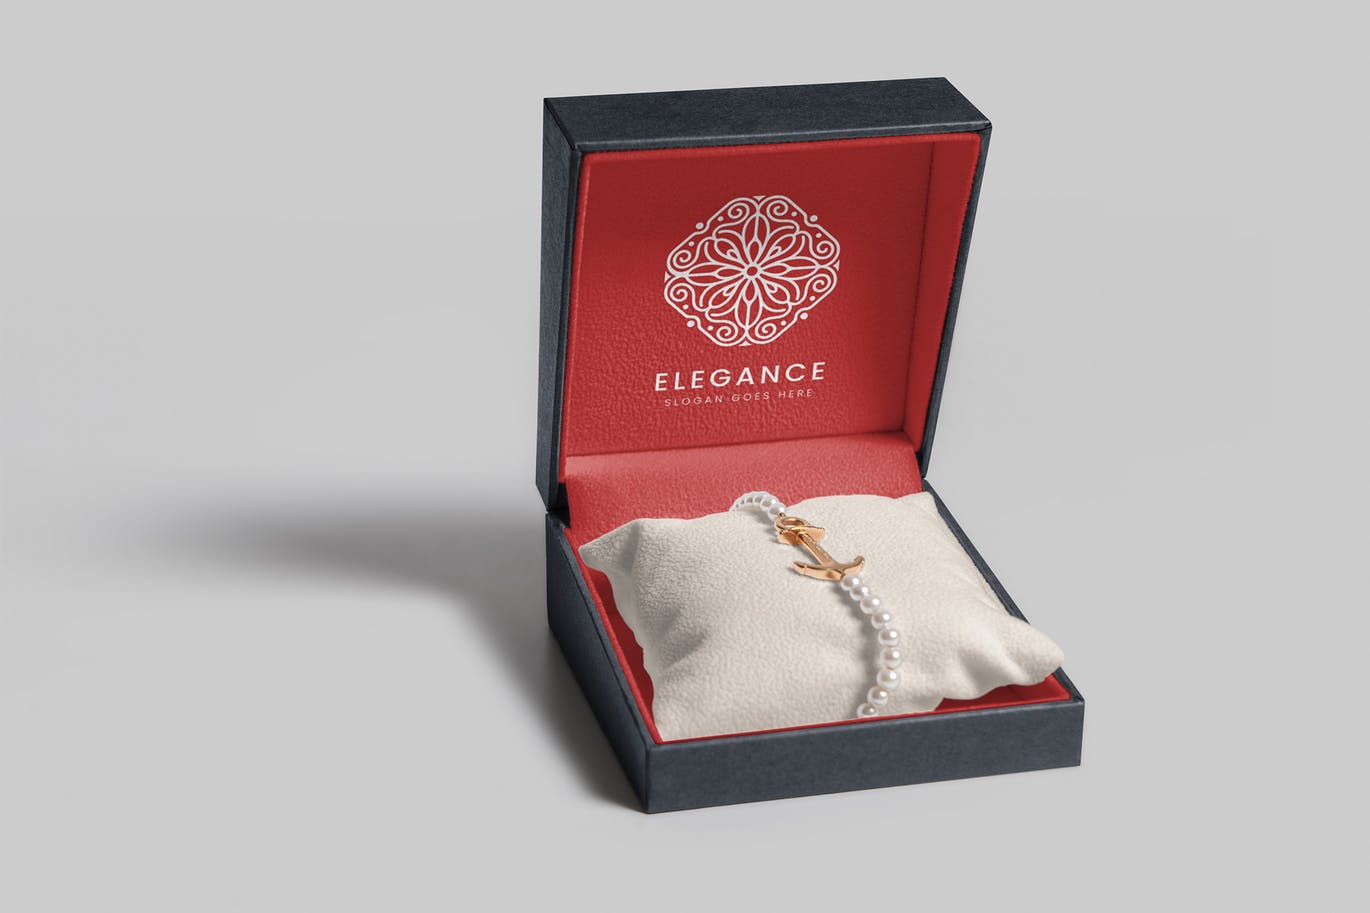 珠宝包装盒设计图第一素材精选模板 Jewelry Packaging Box Mockups插图(8)